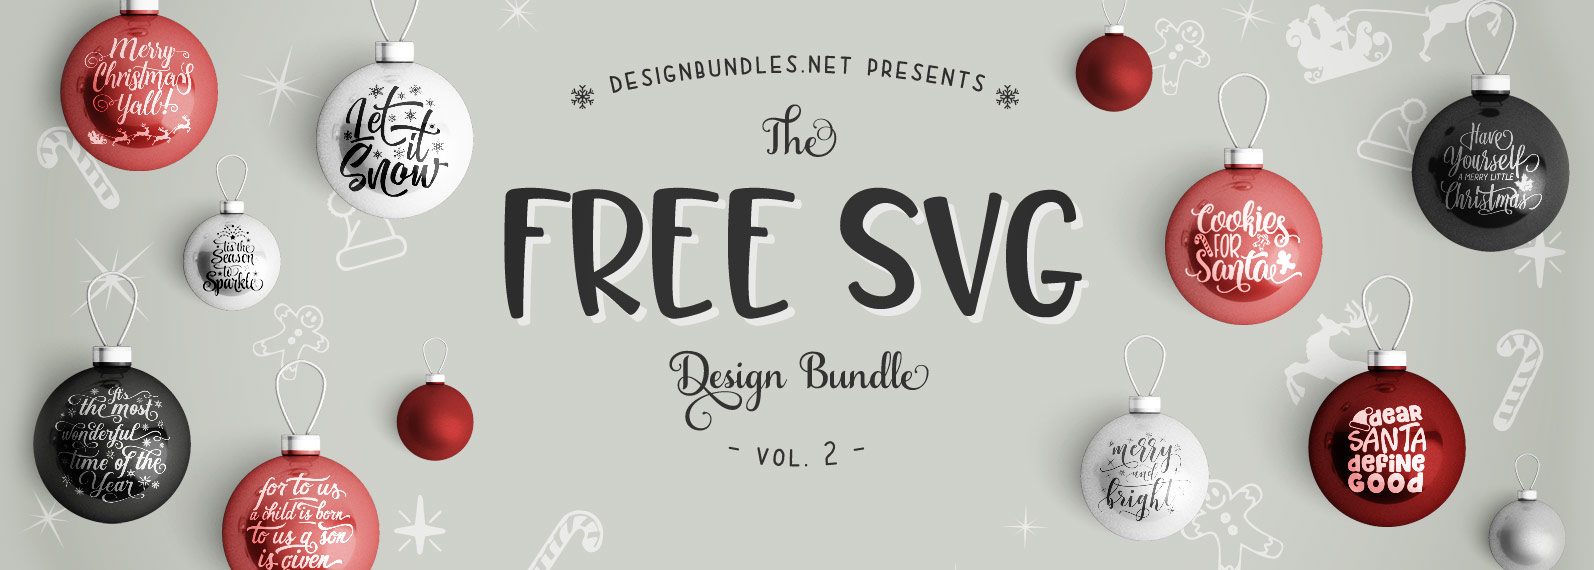 Free Svg Bundle Ii Design Bundles